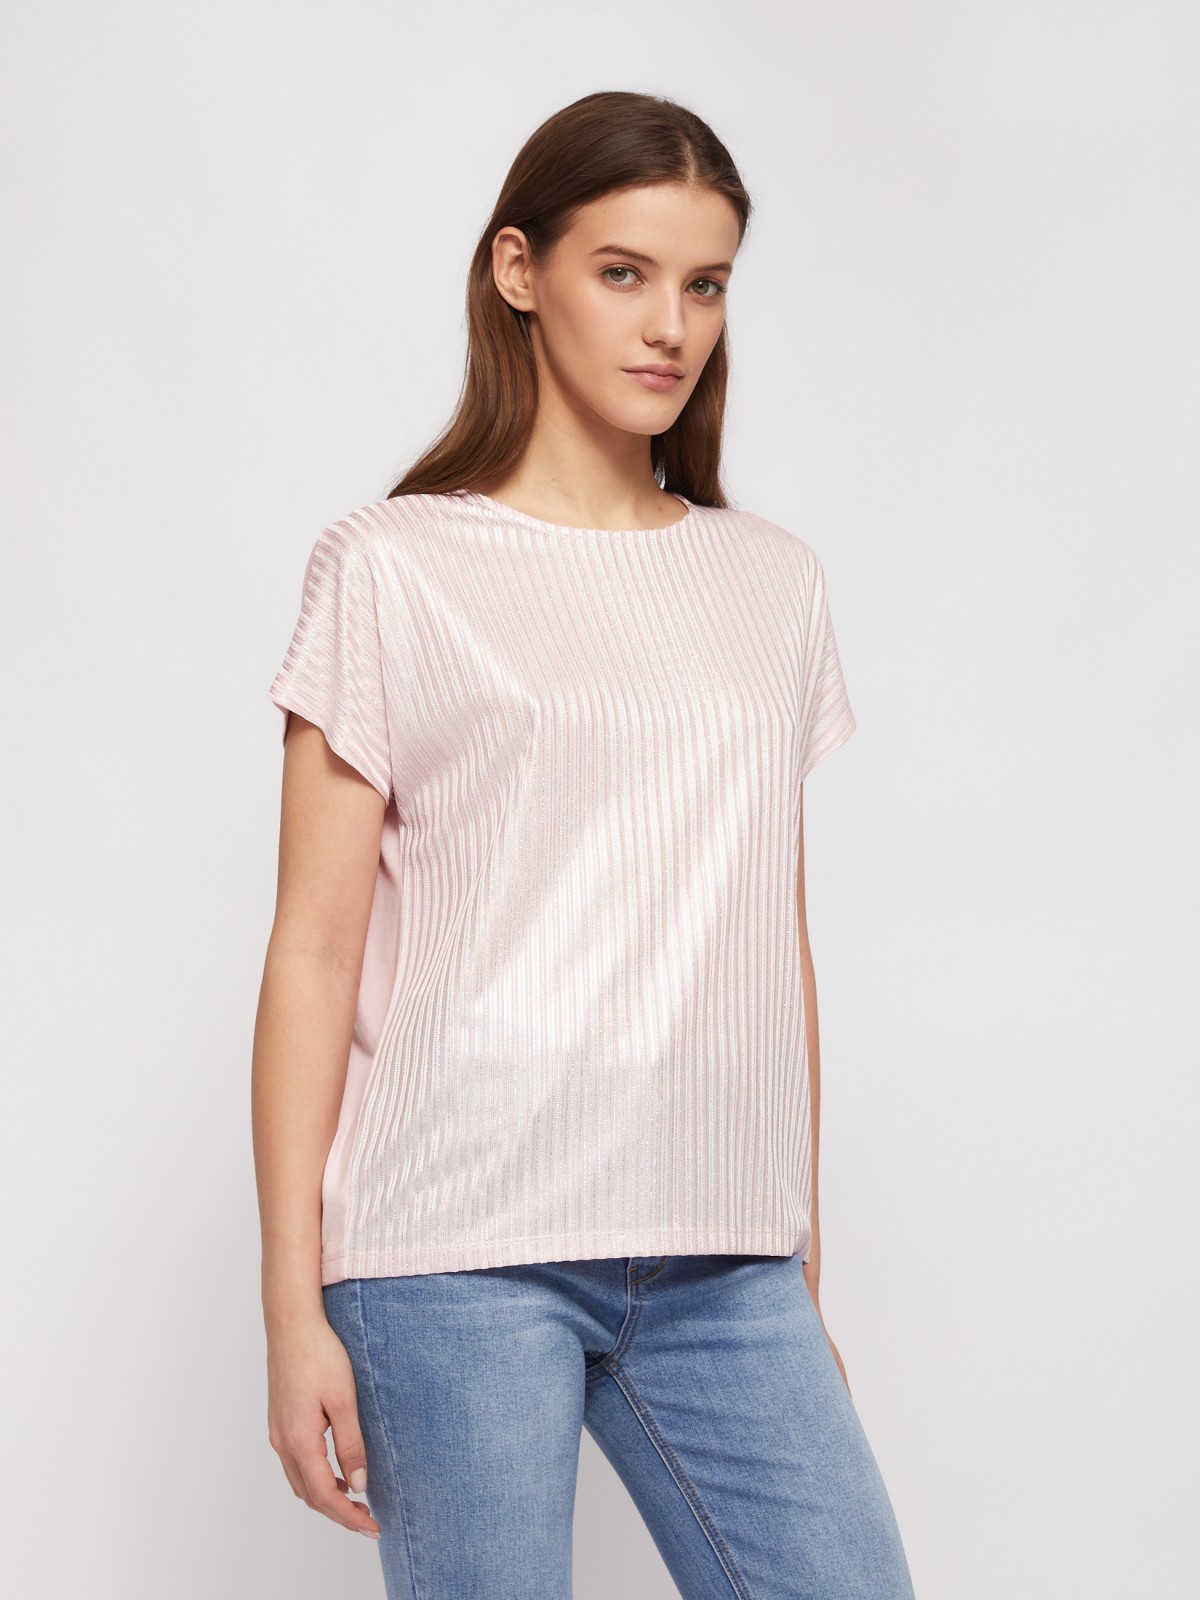 Трикотажный комбинированный топ-блузка с блеском zolla 024223226033, цвет розовый, размер XS - фото 4